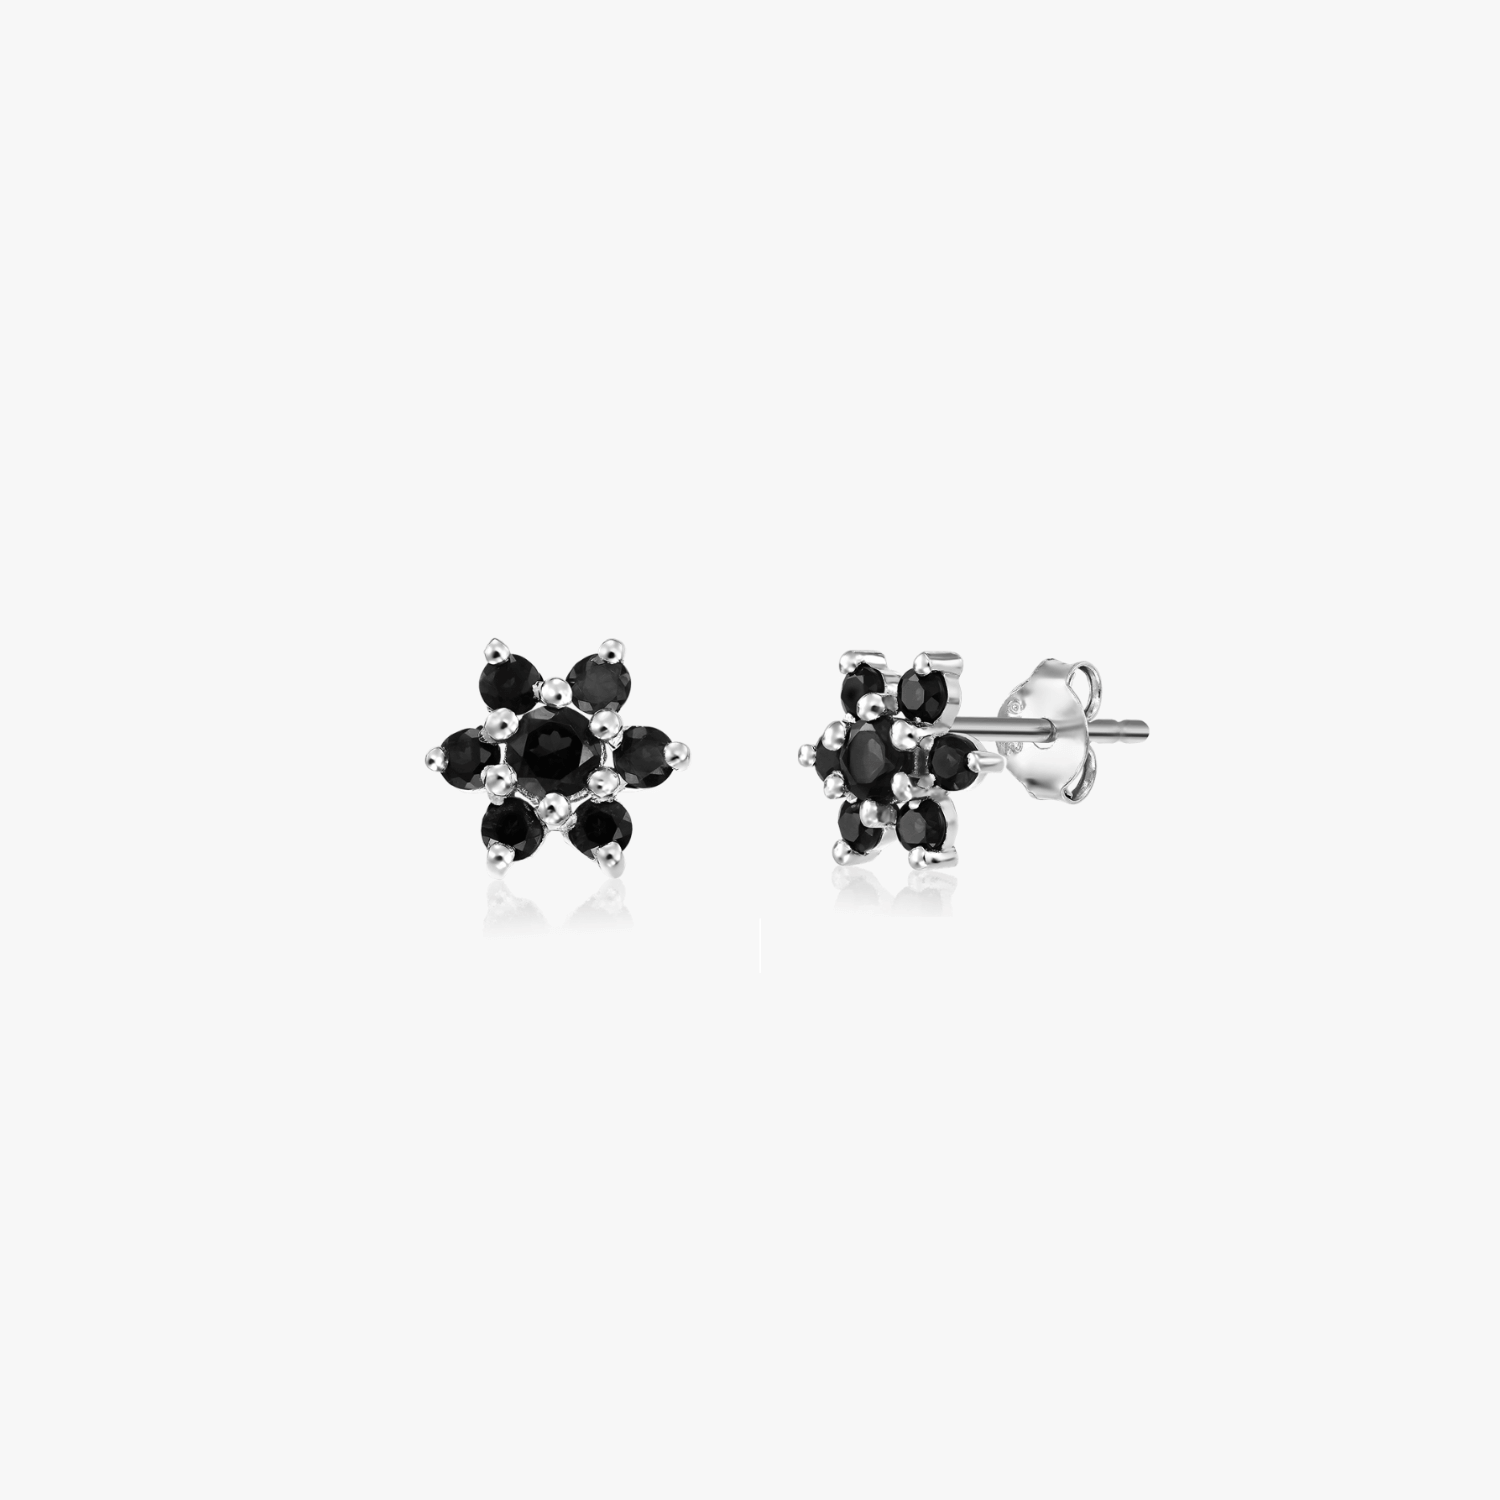 Dahlia silver earrings - Black Onyx